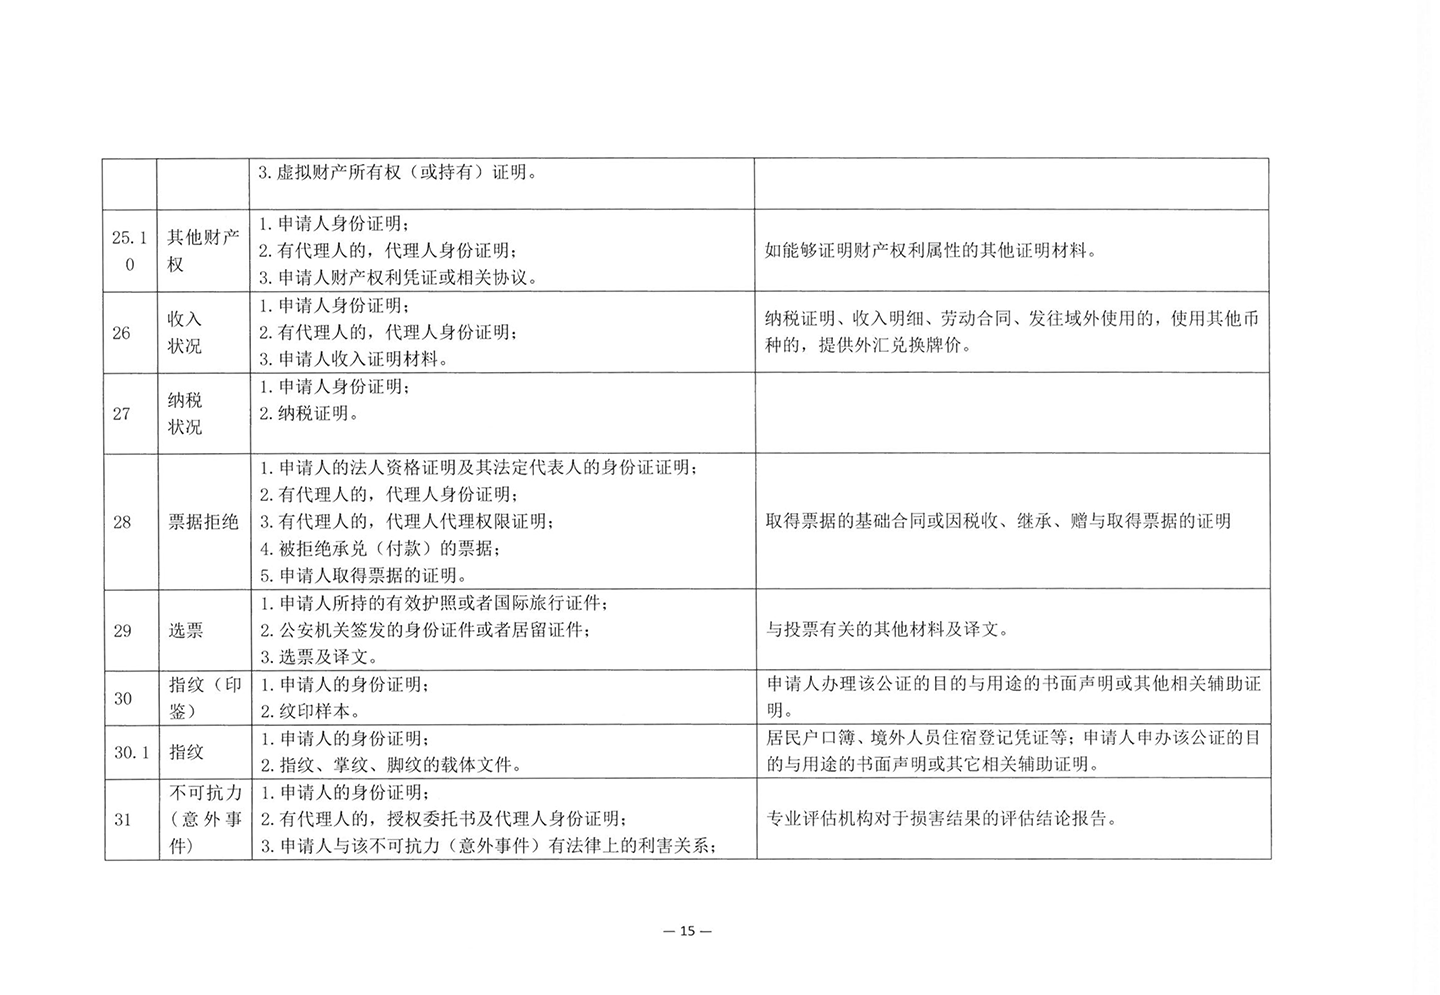 010417243466_03北京市公证协会关于印发《公证机构受理公证事项事务申请证明材料清单》的通知_17